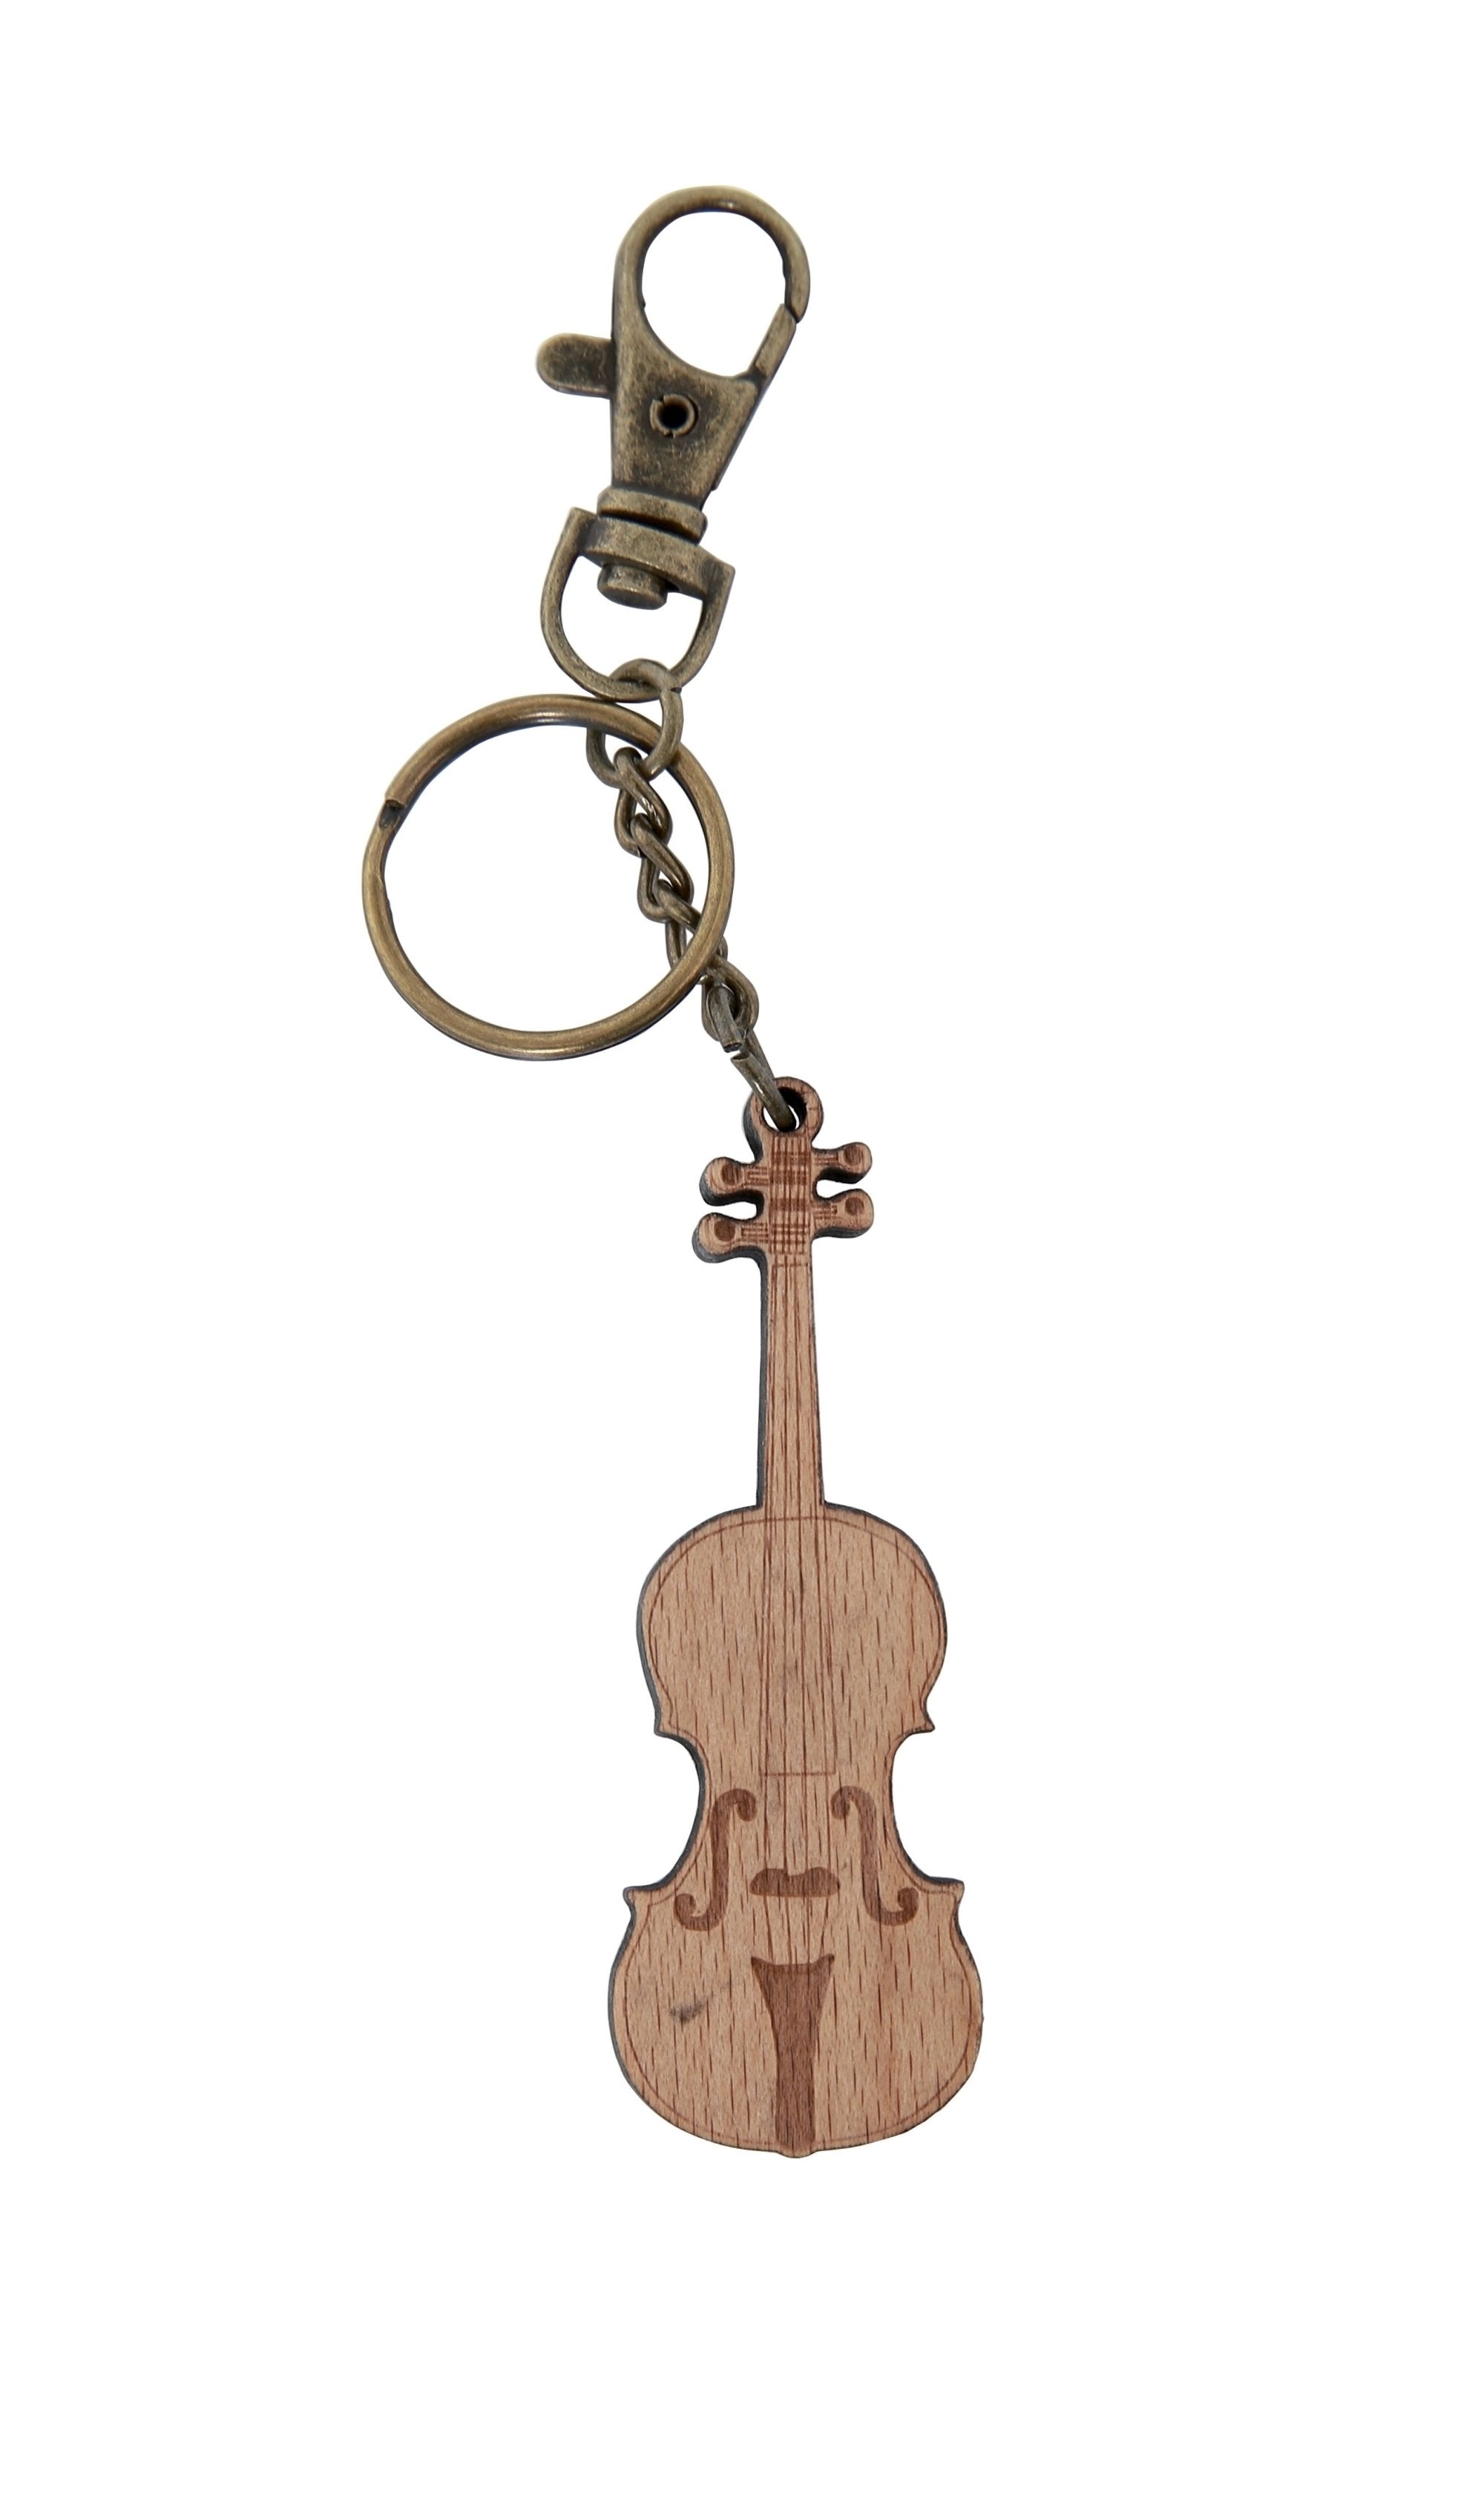 Wooden violin keyring